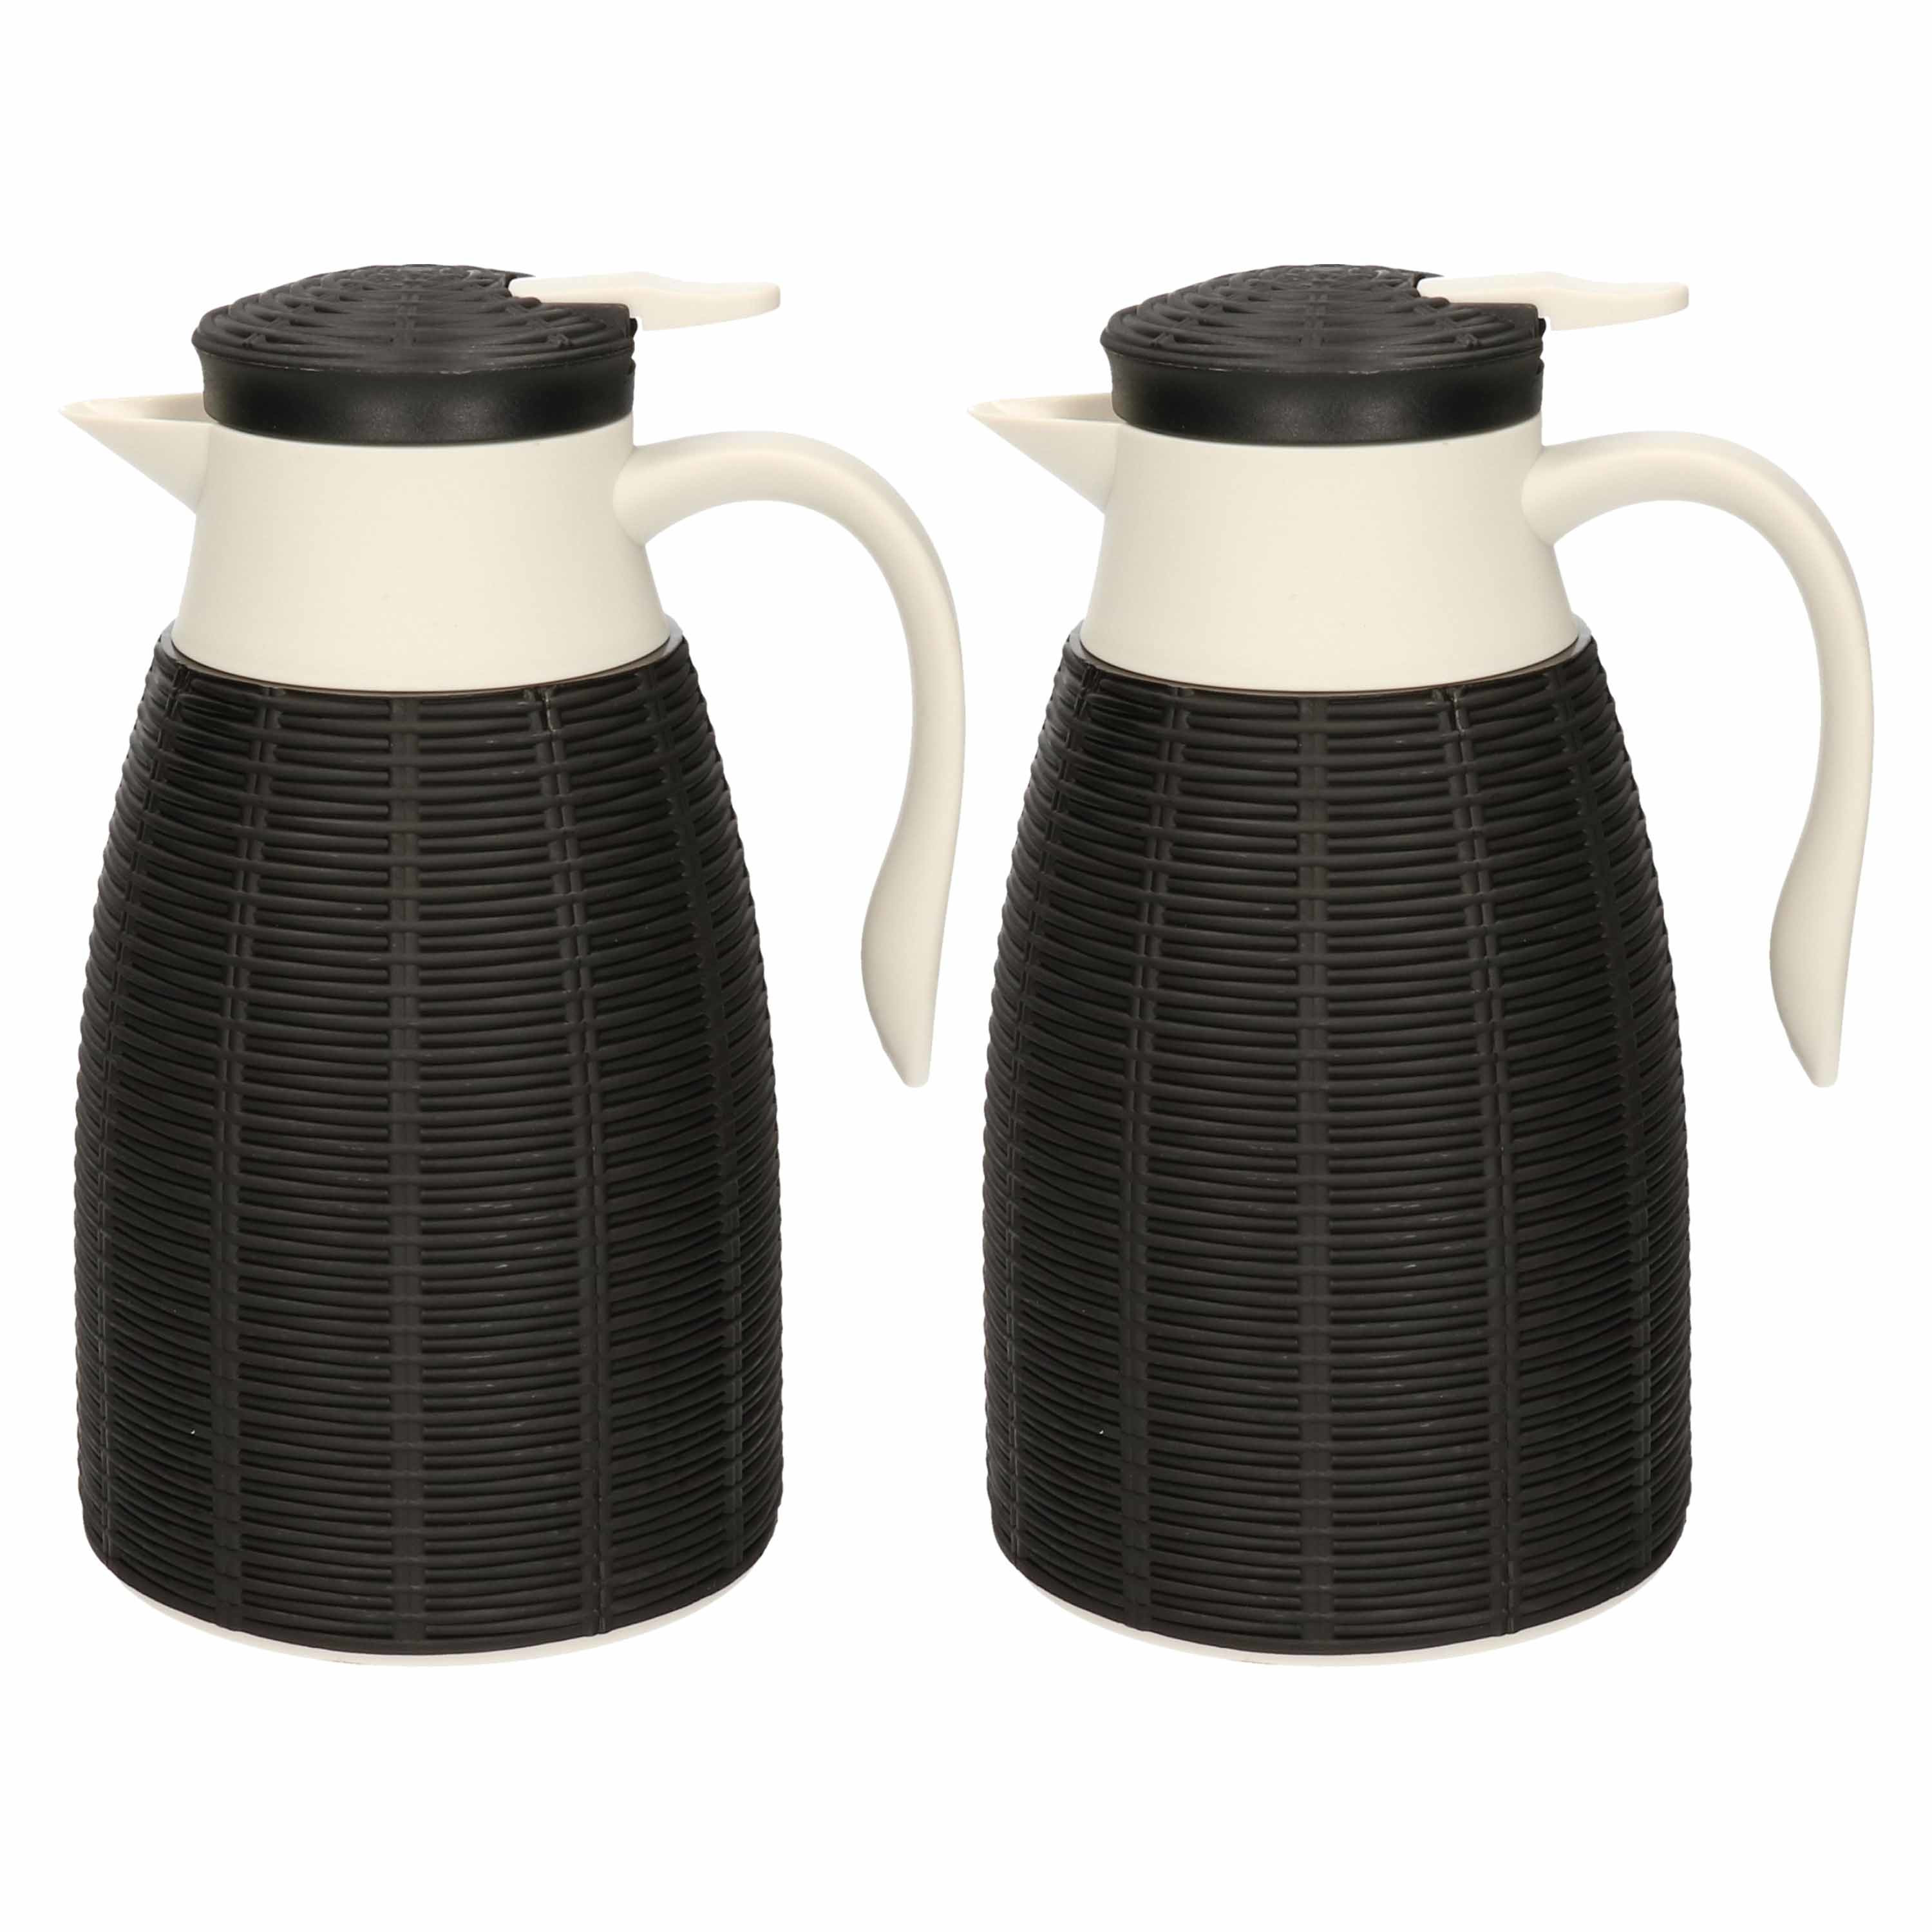 5x Zwarte rotan koffiekan/isoleerkan 1 liter - Koffiekannen/theekannen/isoleerkannen/thermoskannen